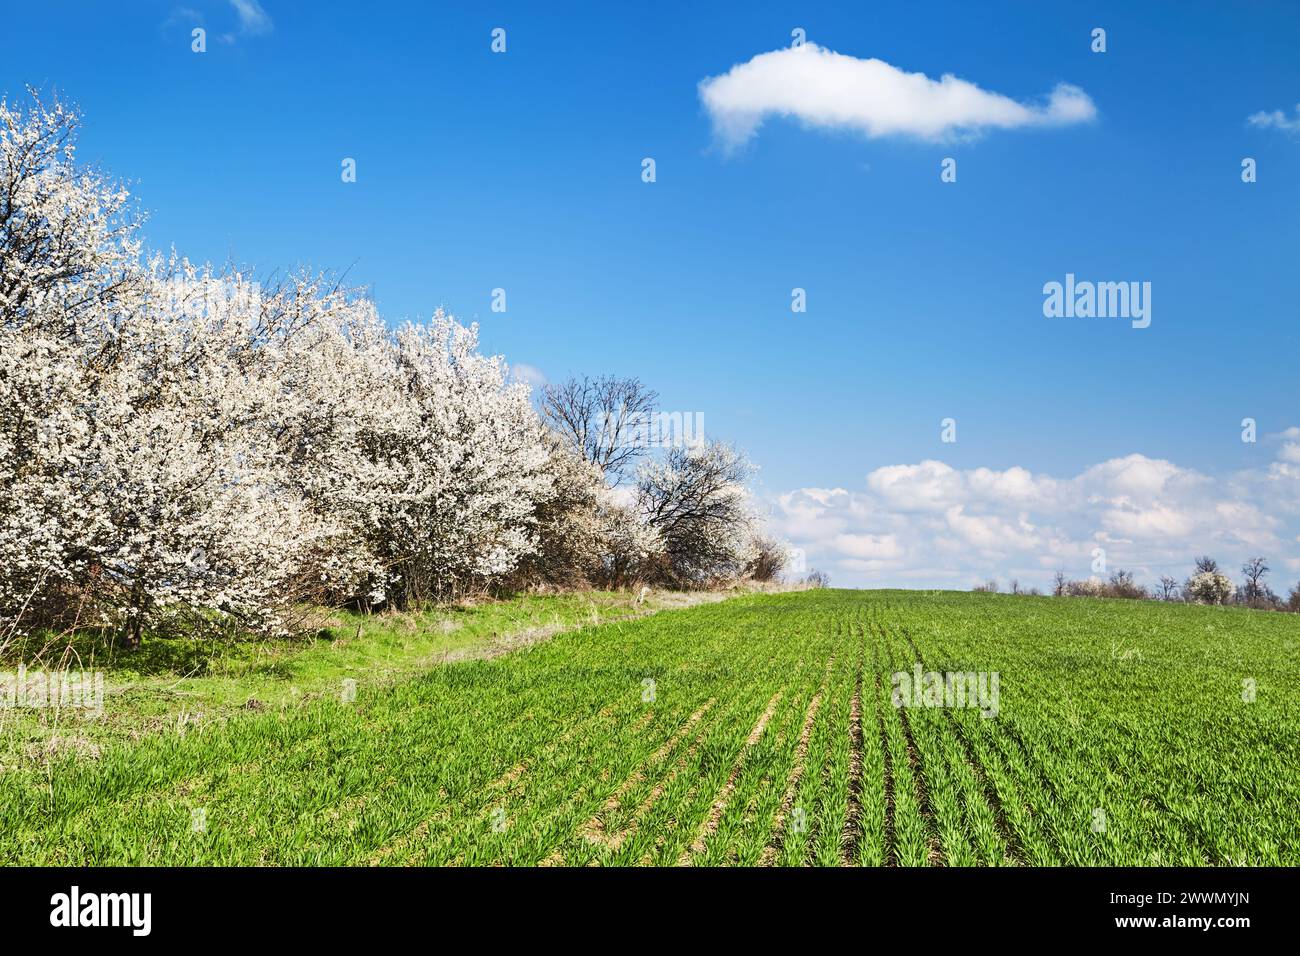 Beau paysage de printemps avec champ vert frais, arbres en fleurs et ciel bleu Banque D'Images